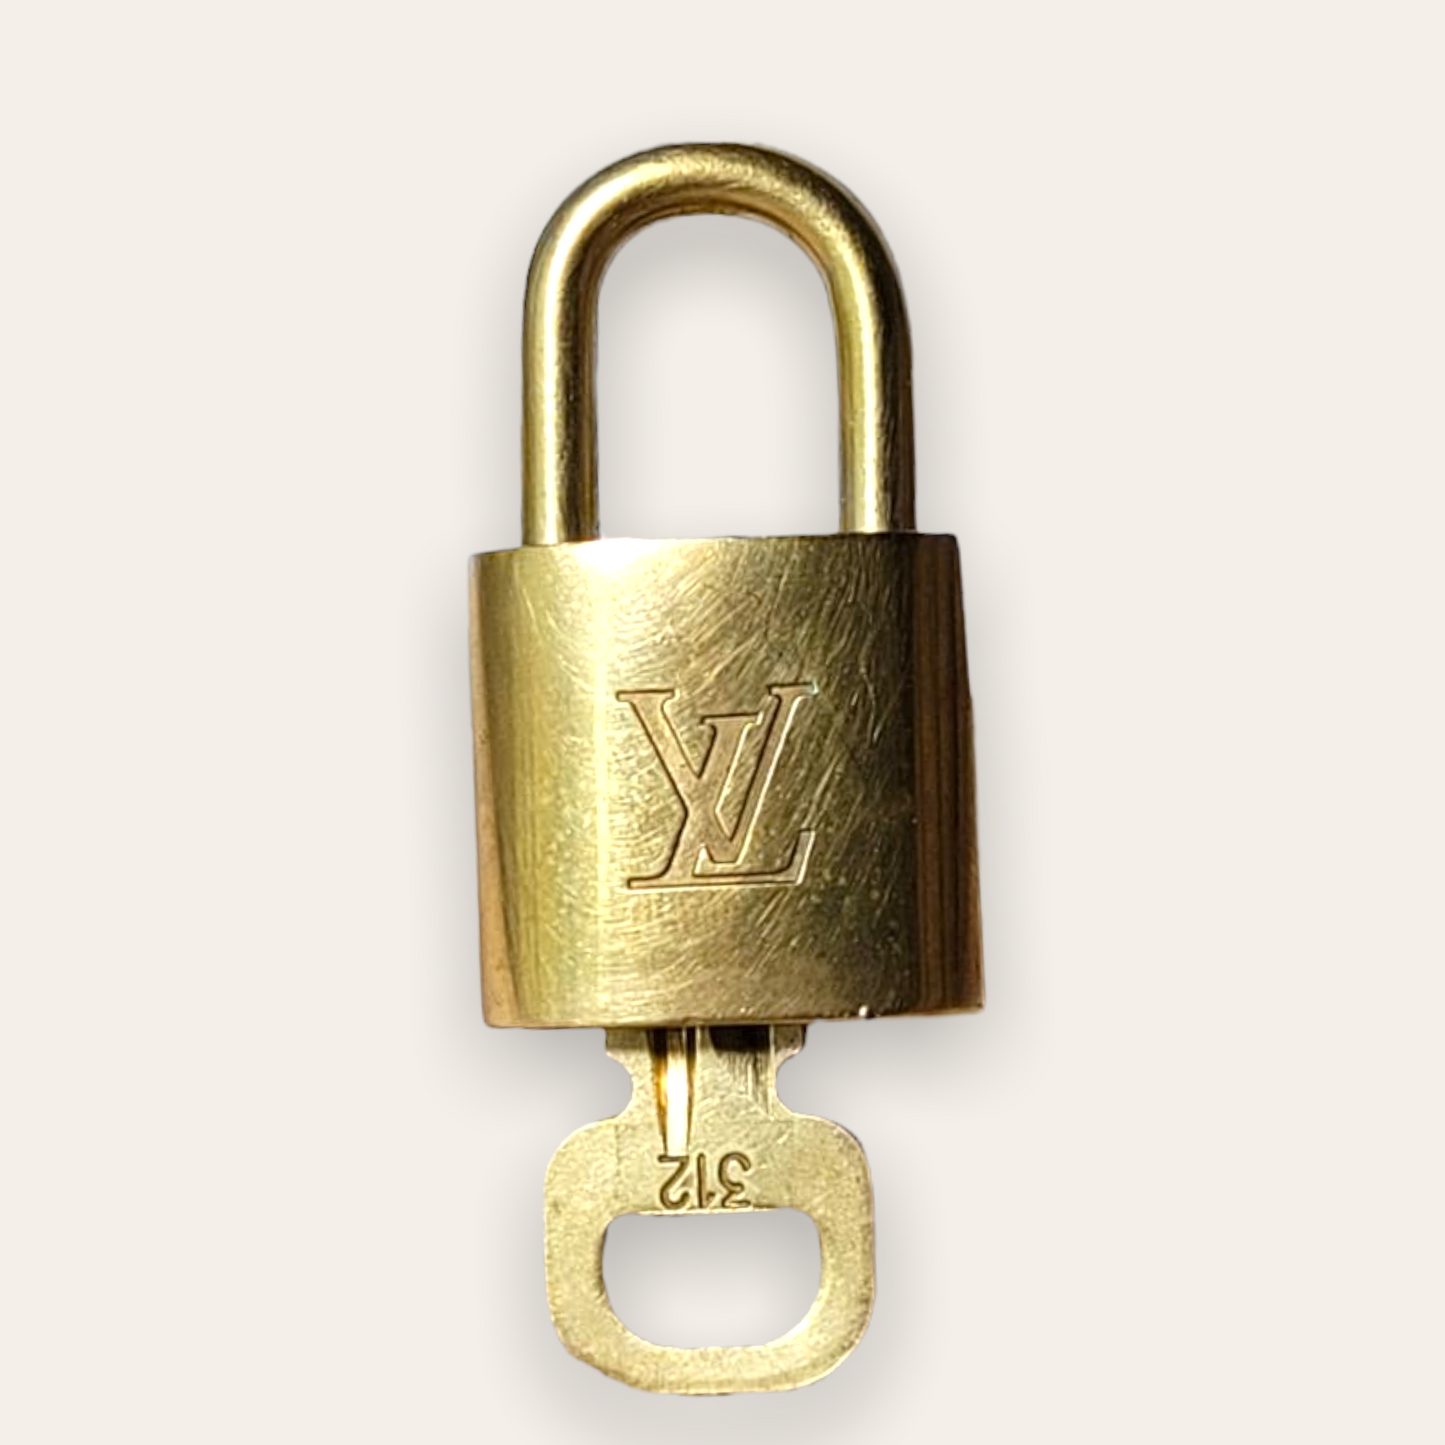 Louis Vuitton Lockset